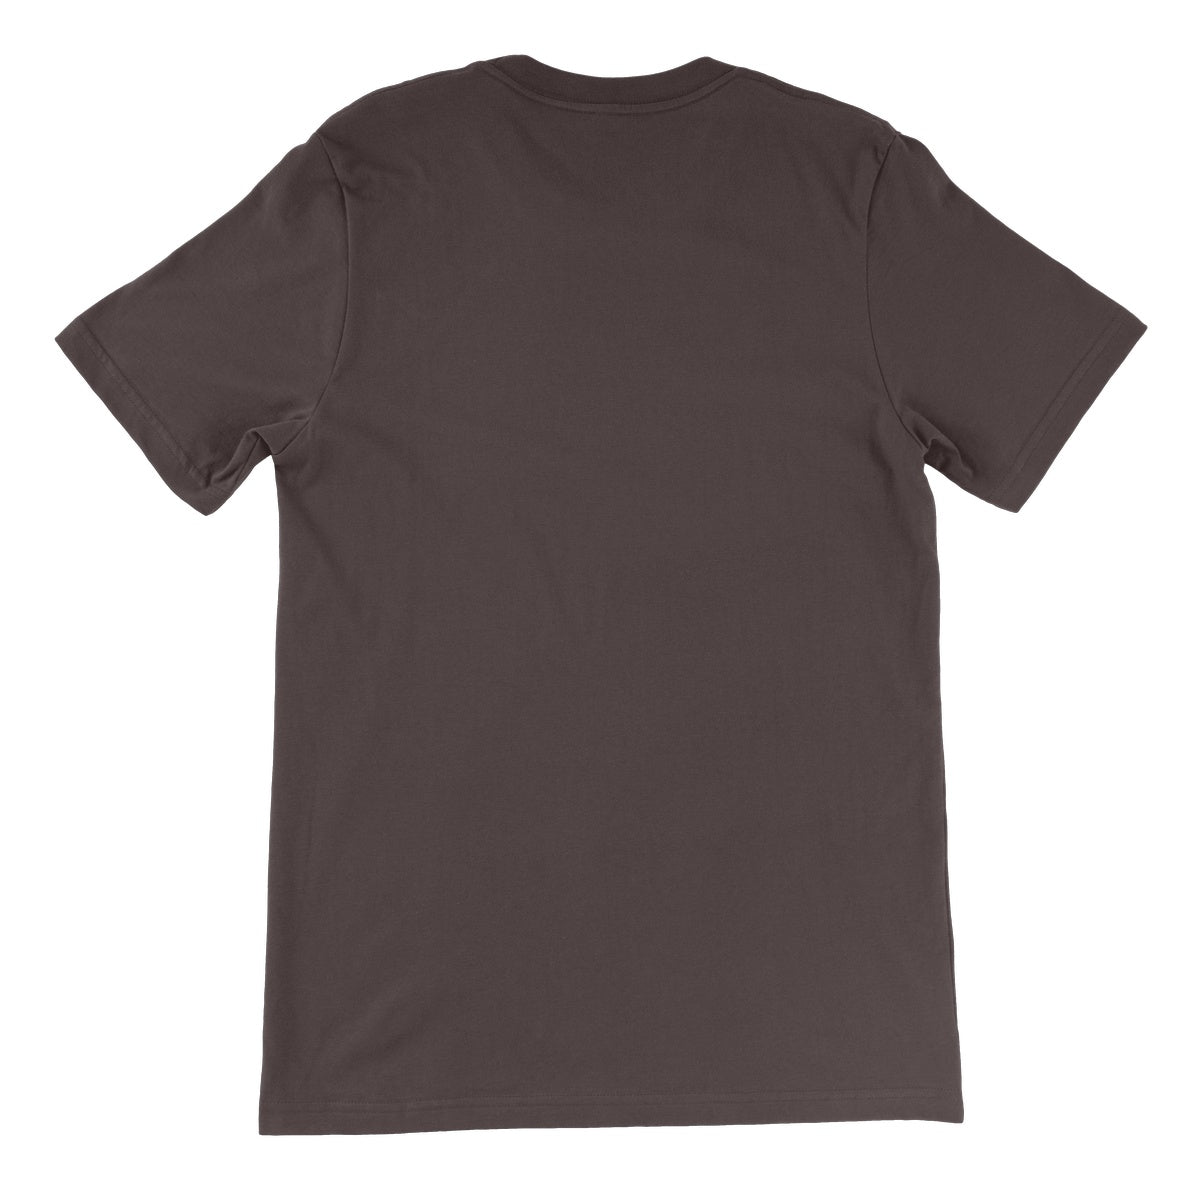 Bino Love Unisex Short Sleeve T-Shirt